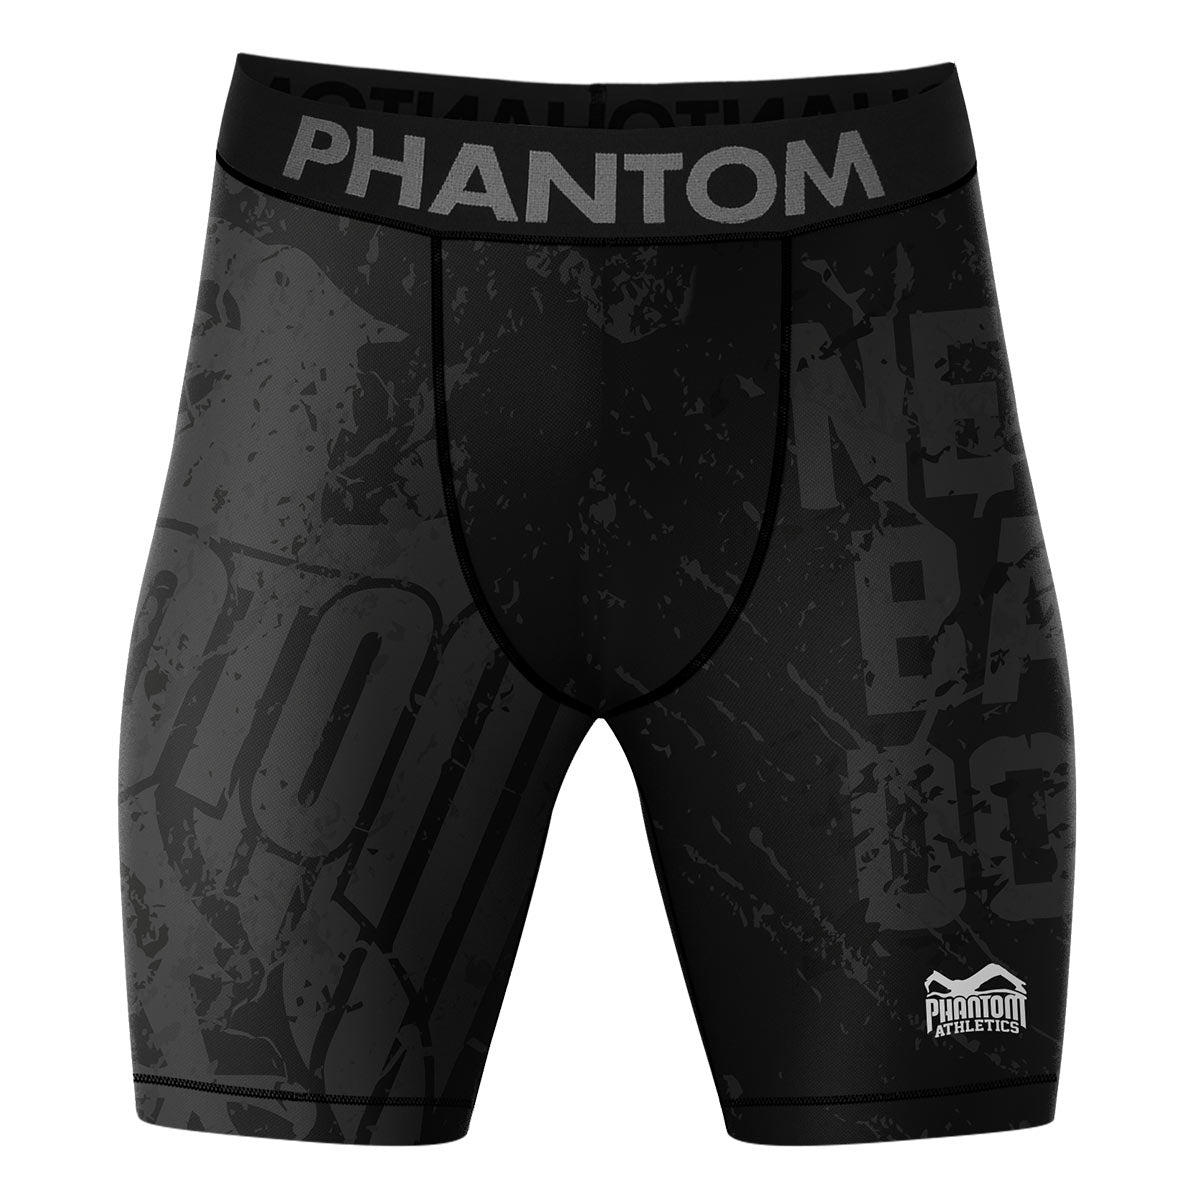 Kompresijske bojne kratke hlače Phantom EVO v dizajnu Team Germany. Z nemškim orlom in napisom "Never Back Down". Idealen za vaše borilne športe, kot so MMA, tajski boks, rokoborba, BJJ ali kickboxing.